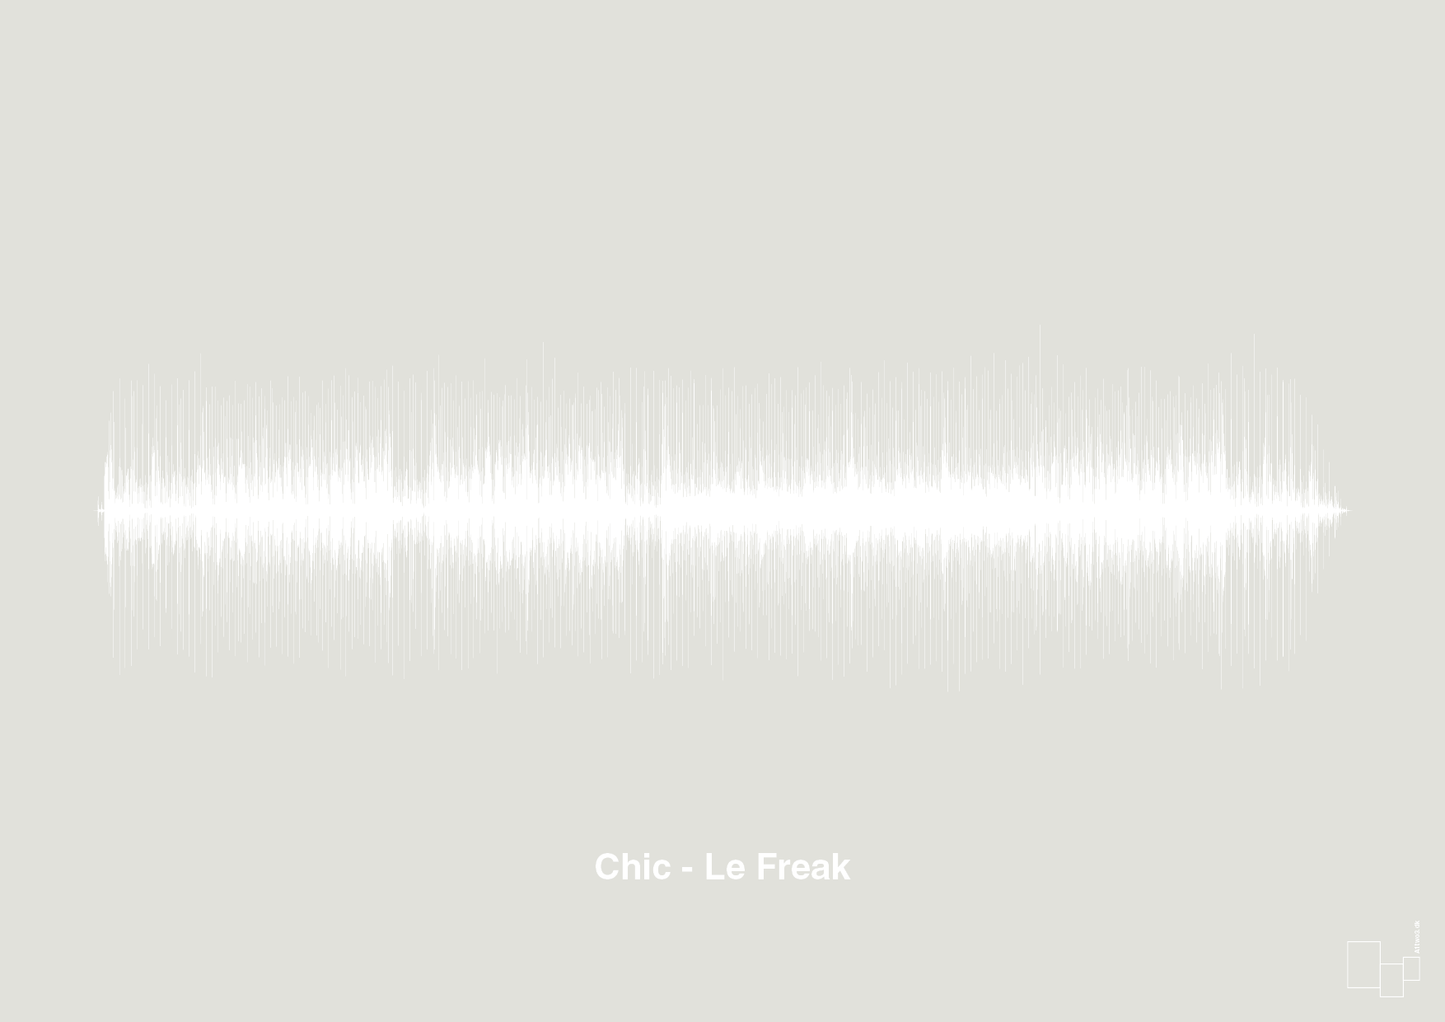 chic - le freak - Plakat med Musik i Painters White